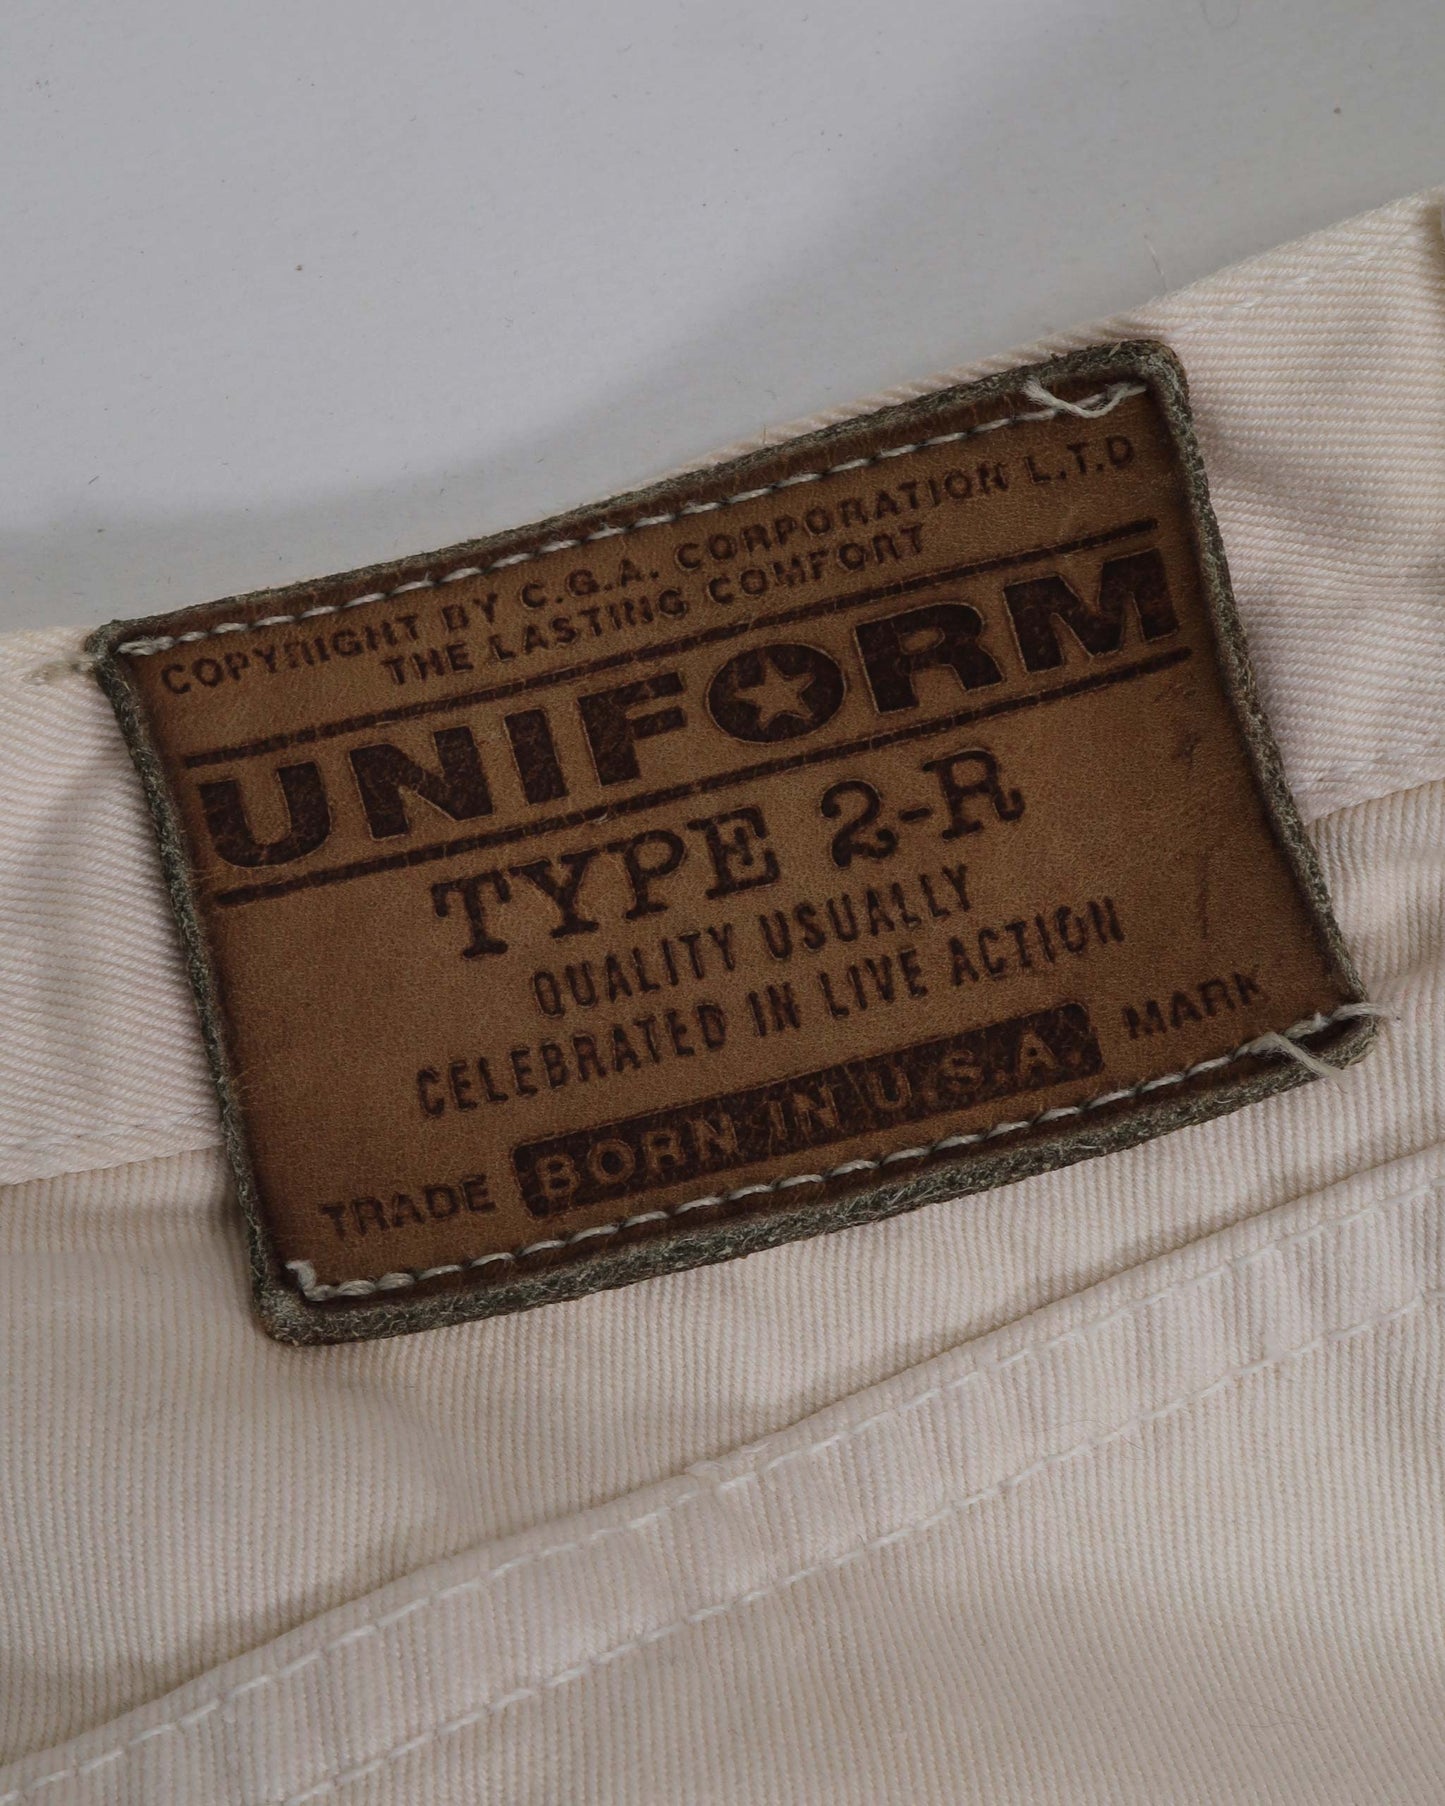 Vintage Uniform Denim Jeans